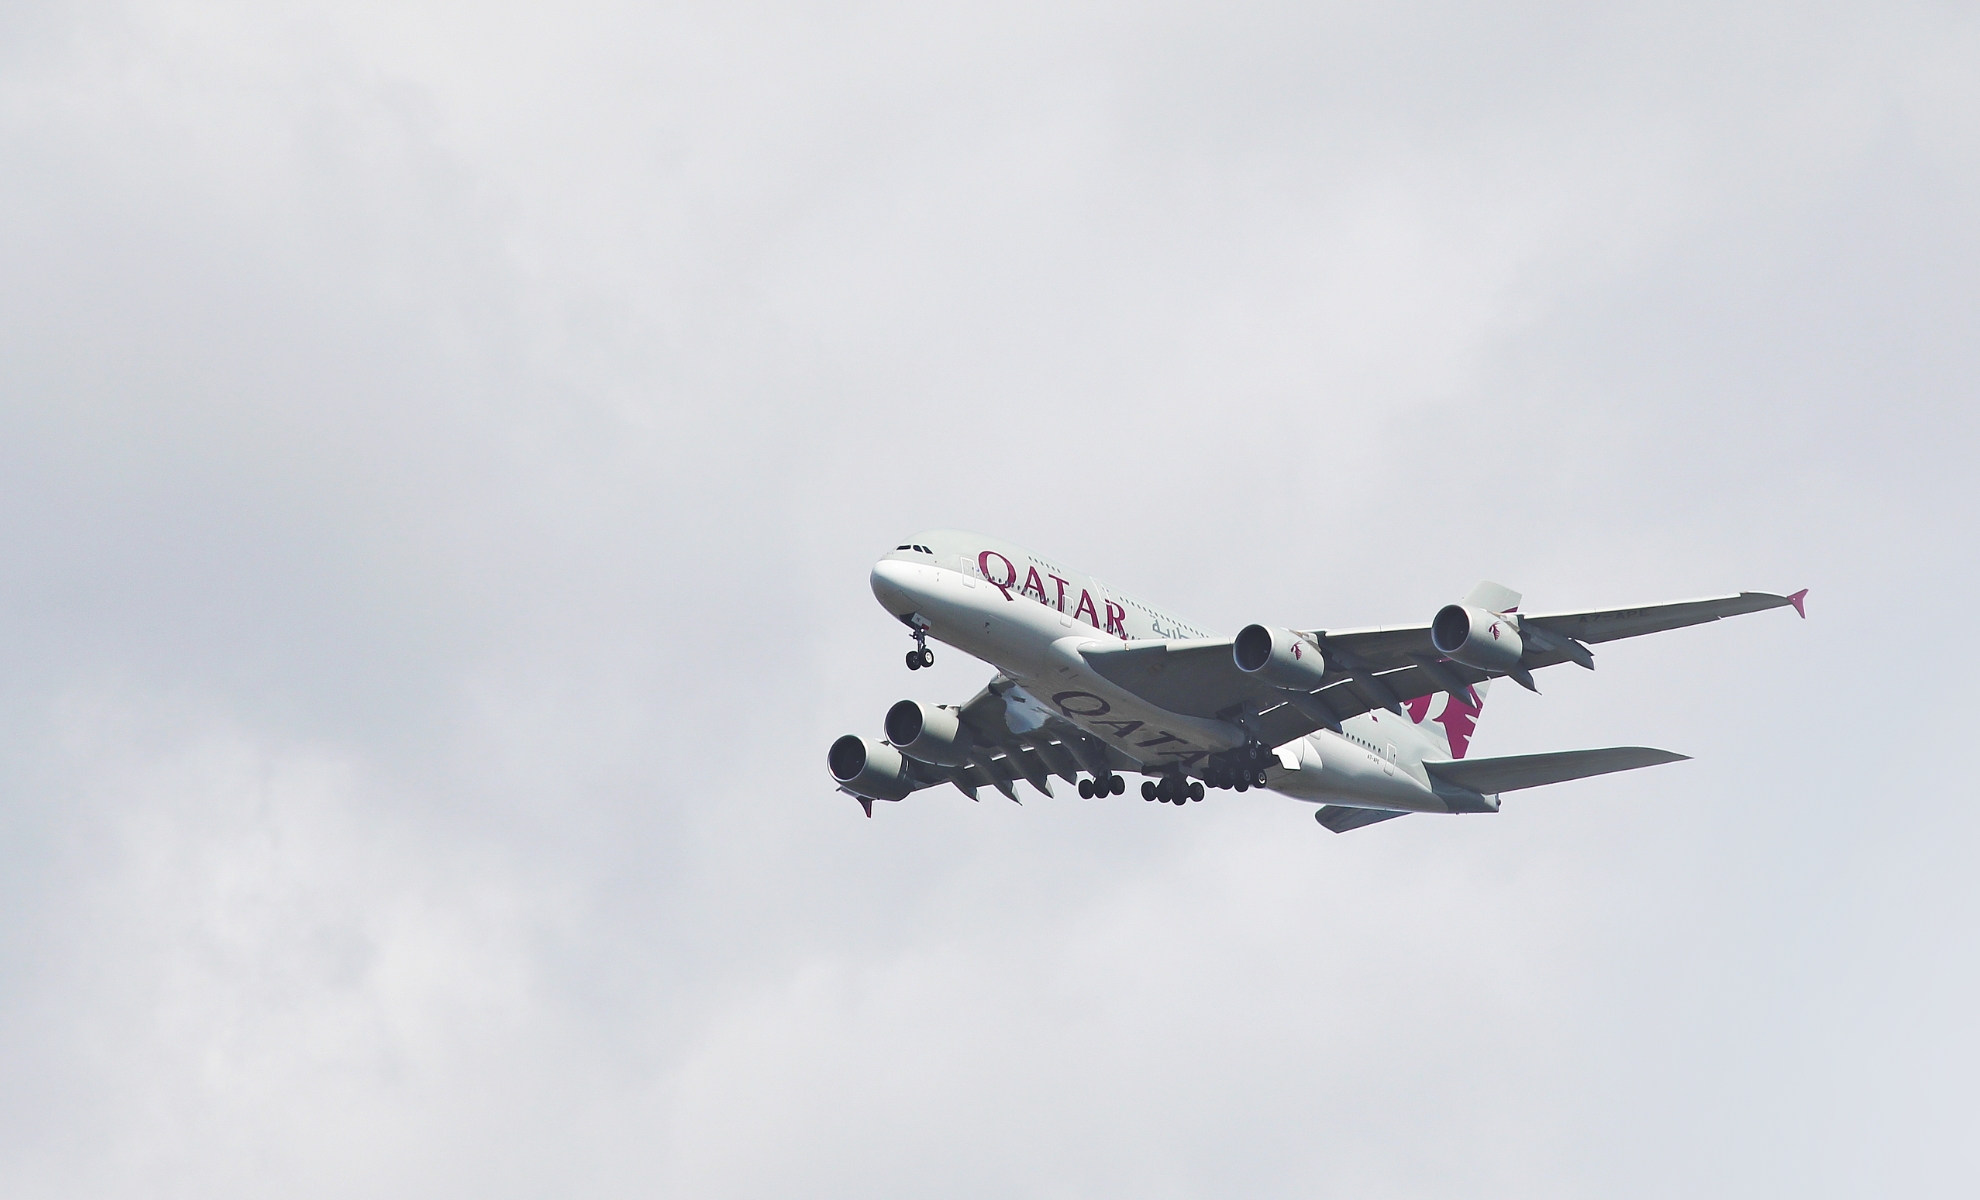 Un avion de la compagnie aérienne Qatar Airways